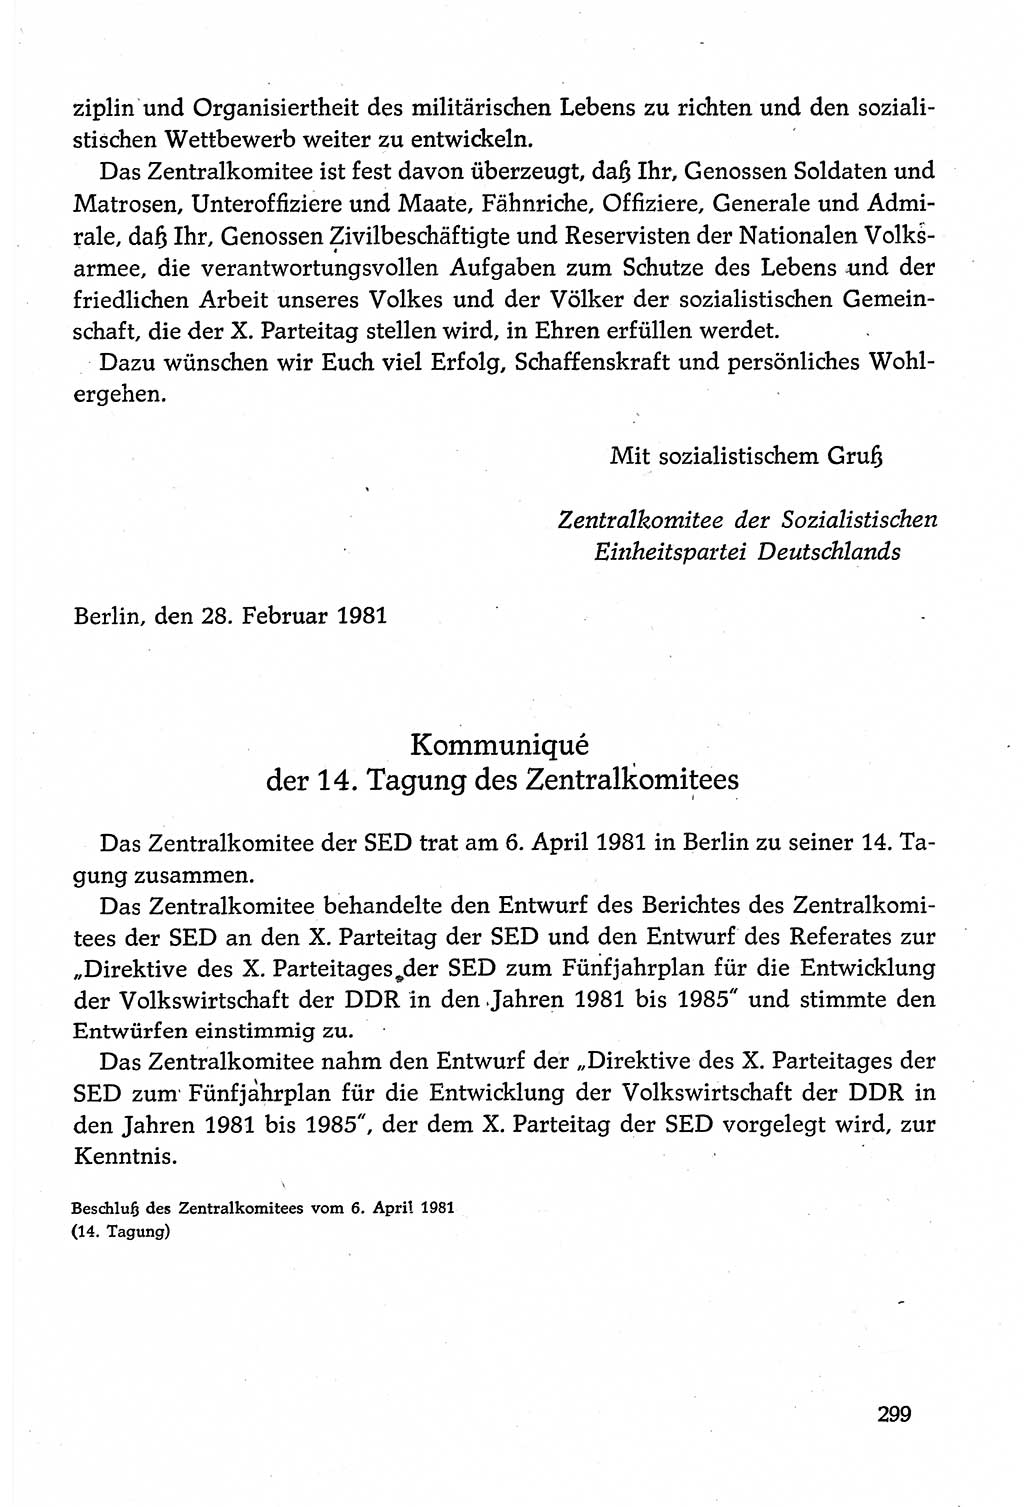 Dokumente der Sozialistischen Einheitspartei Deutschlands (SED) [Deutsche Demokratische Republik (DDR)] 1980-1981, Seite 299 (Dok. SED DDR 1980-1981, S. 299)